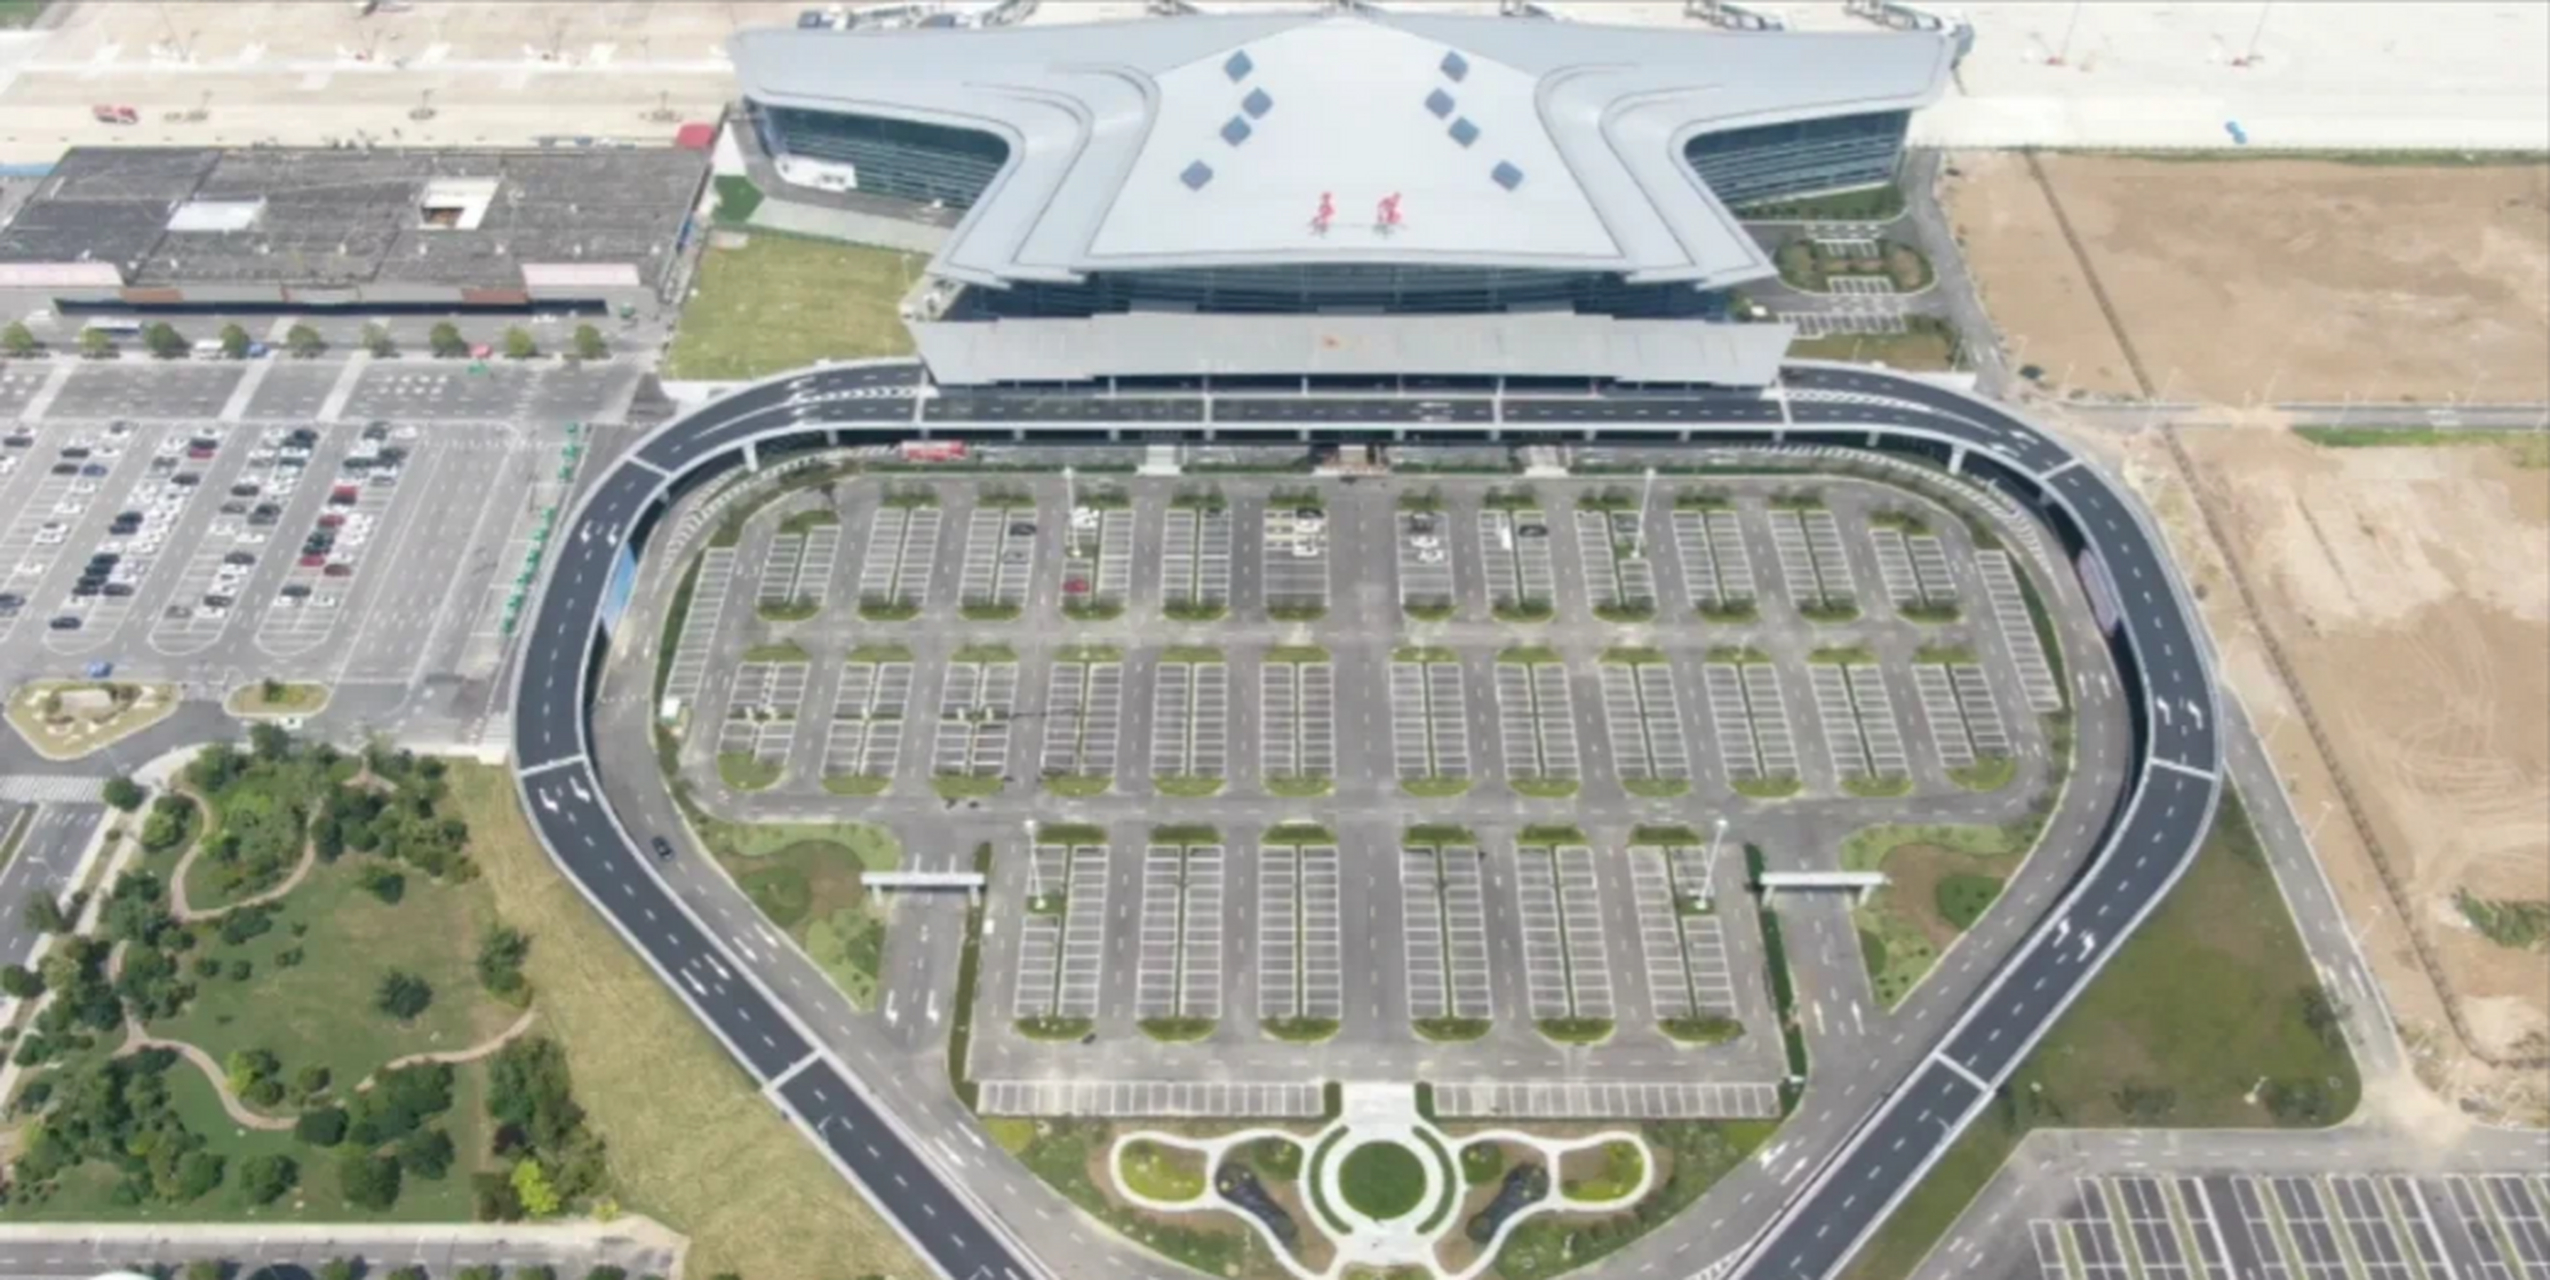 安徽阜阳西关机场新航站楼即将于6月26日正式启用,同时老航站楼也将